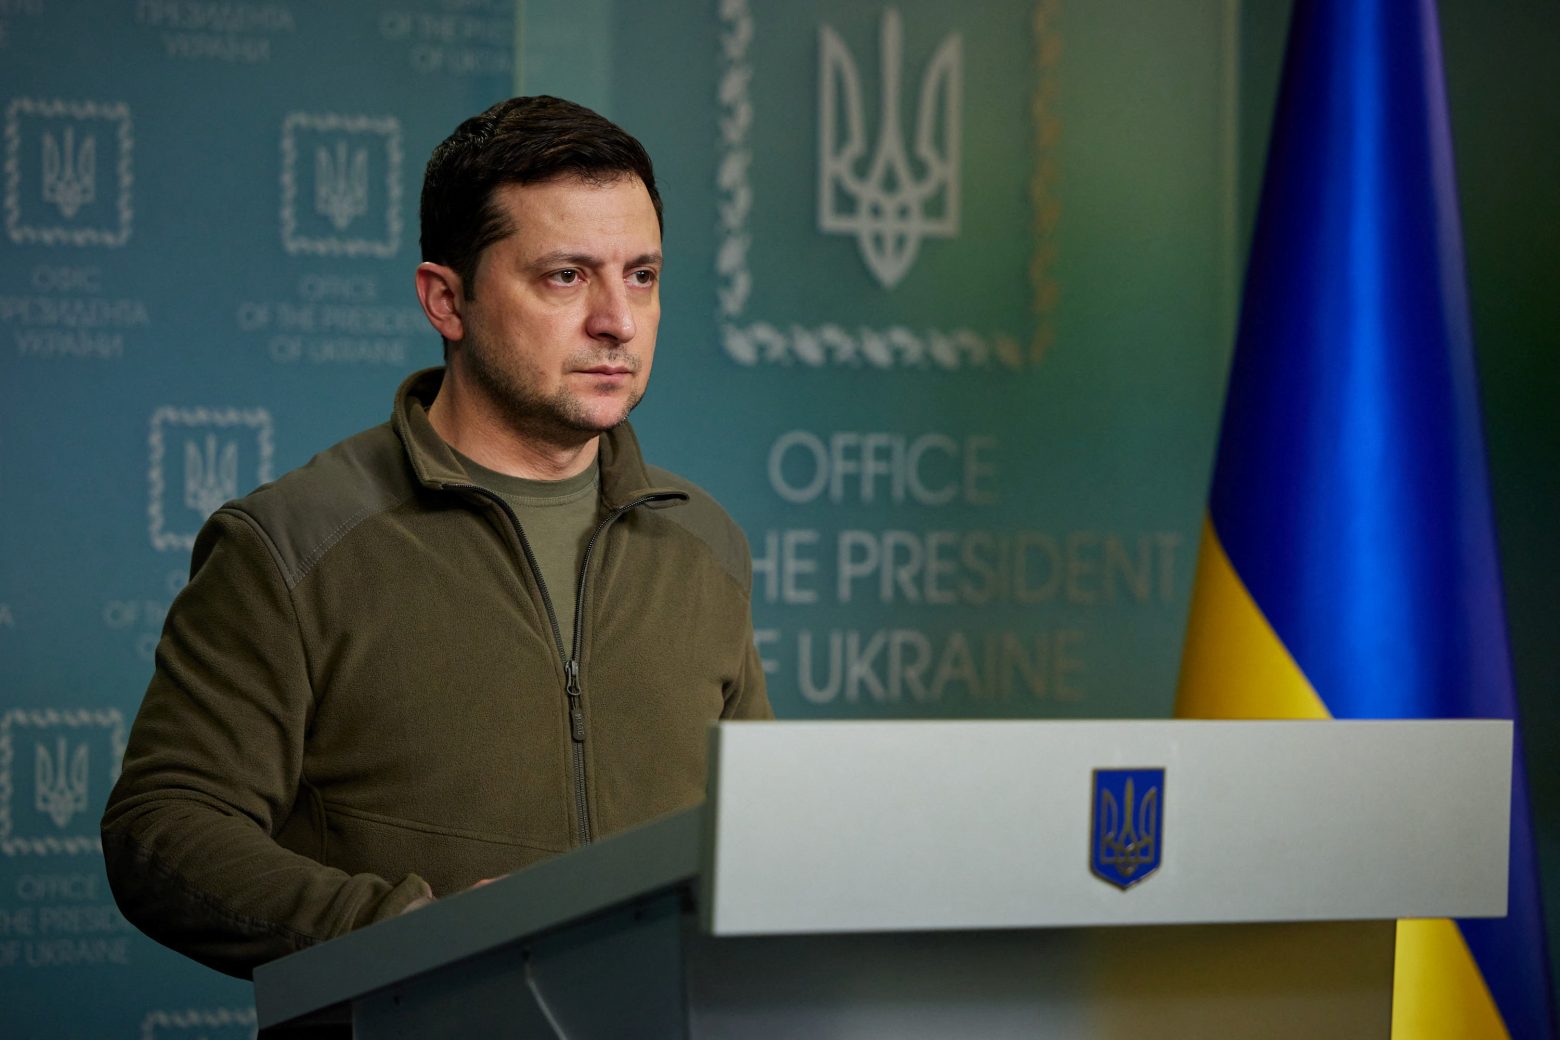 Ουκρανία: Παύθηκαν πέντε τοπικοί κυβερνήτες και τέσσερις υφυπουργοί με εντολή του Β.Ζελένσκι